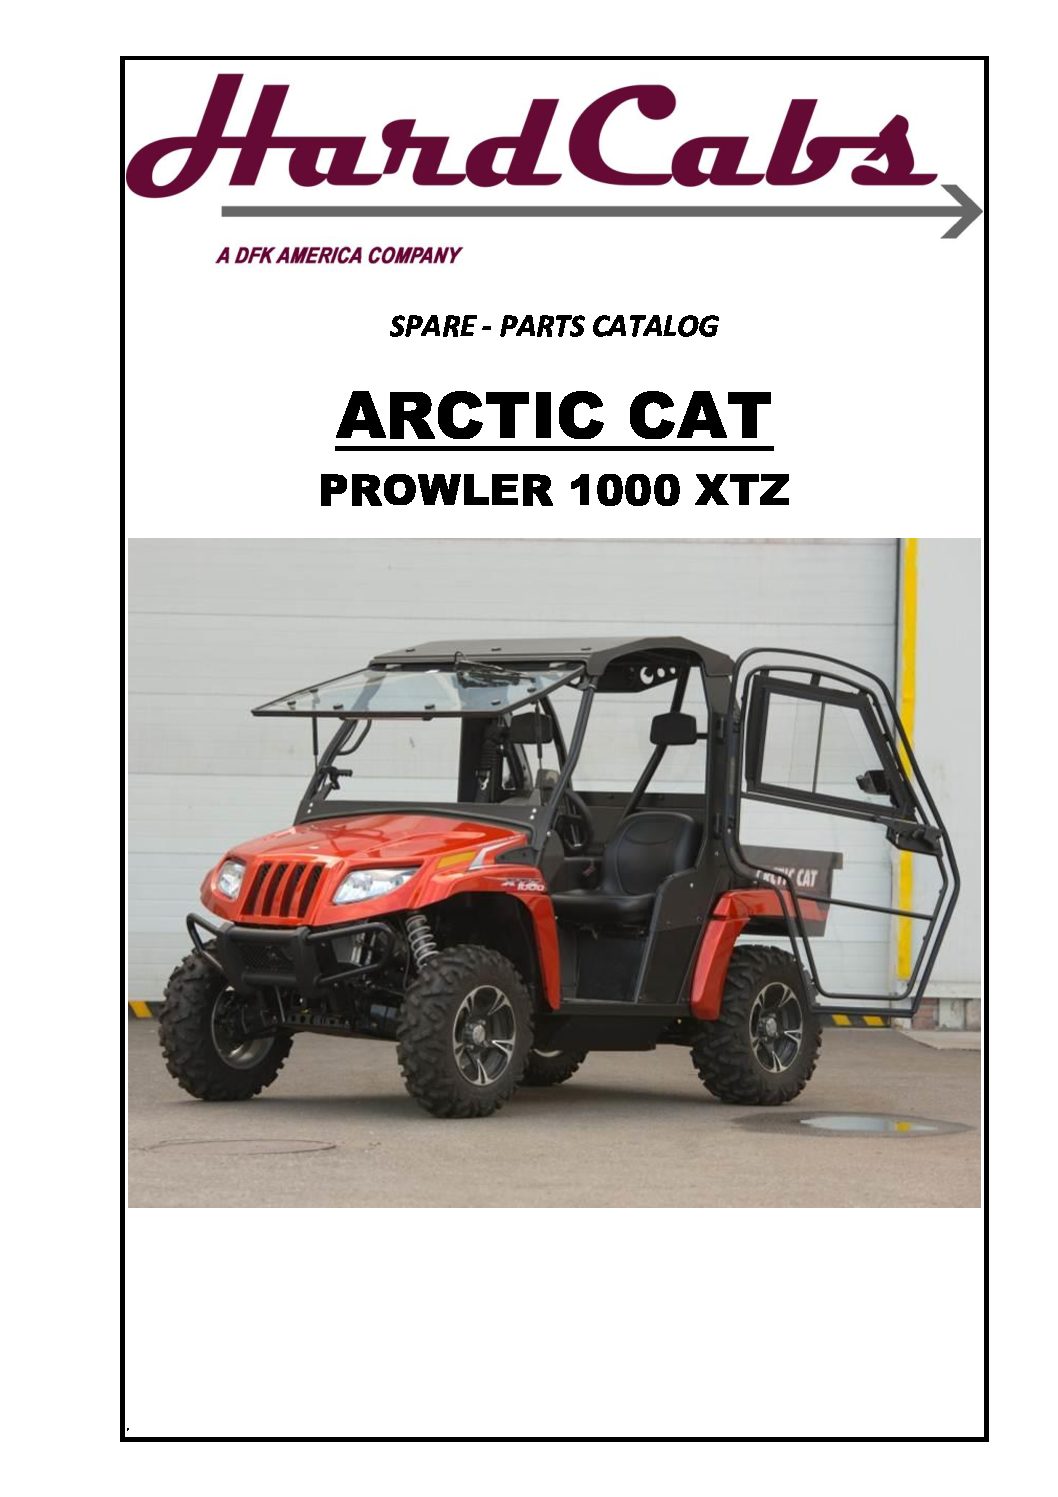 ARCTIC CAT PROWLER 1000_CATALOGUE_5,02 | Hard Cabs